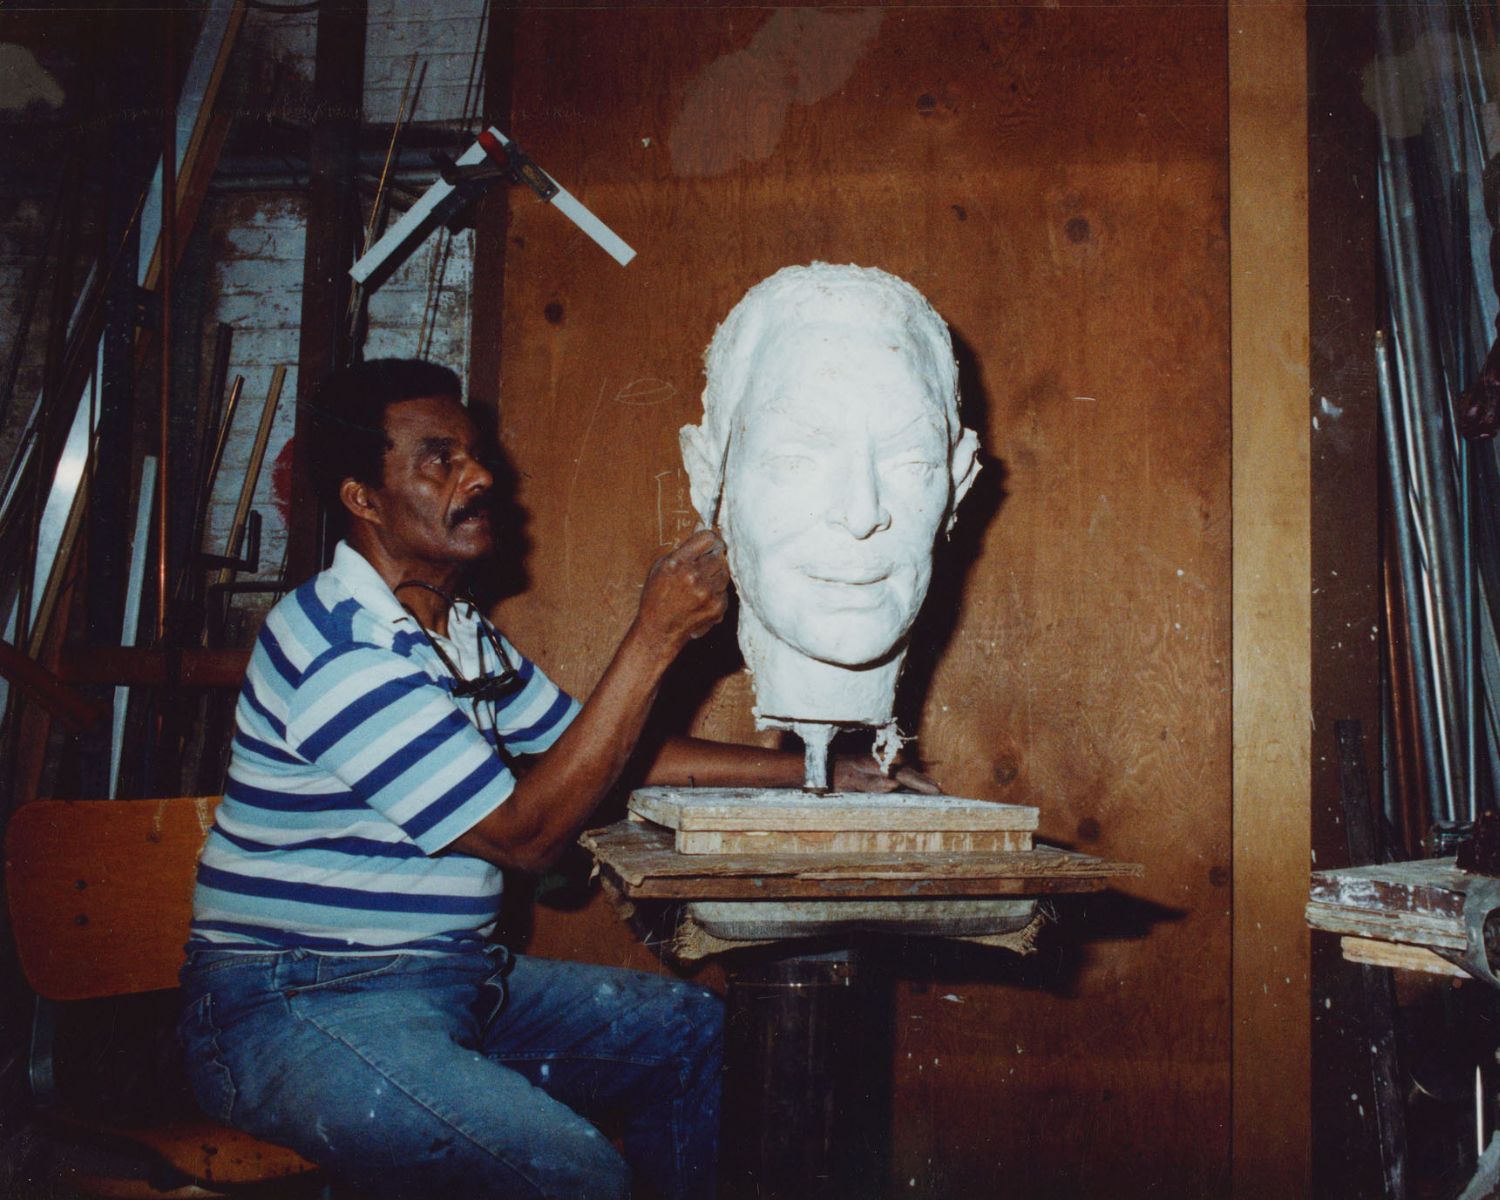 John posing with sculpture